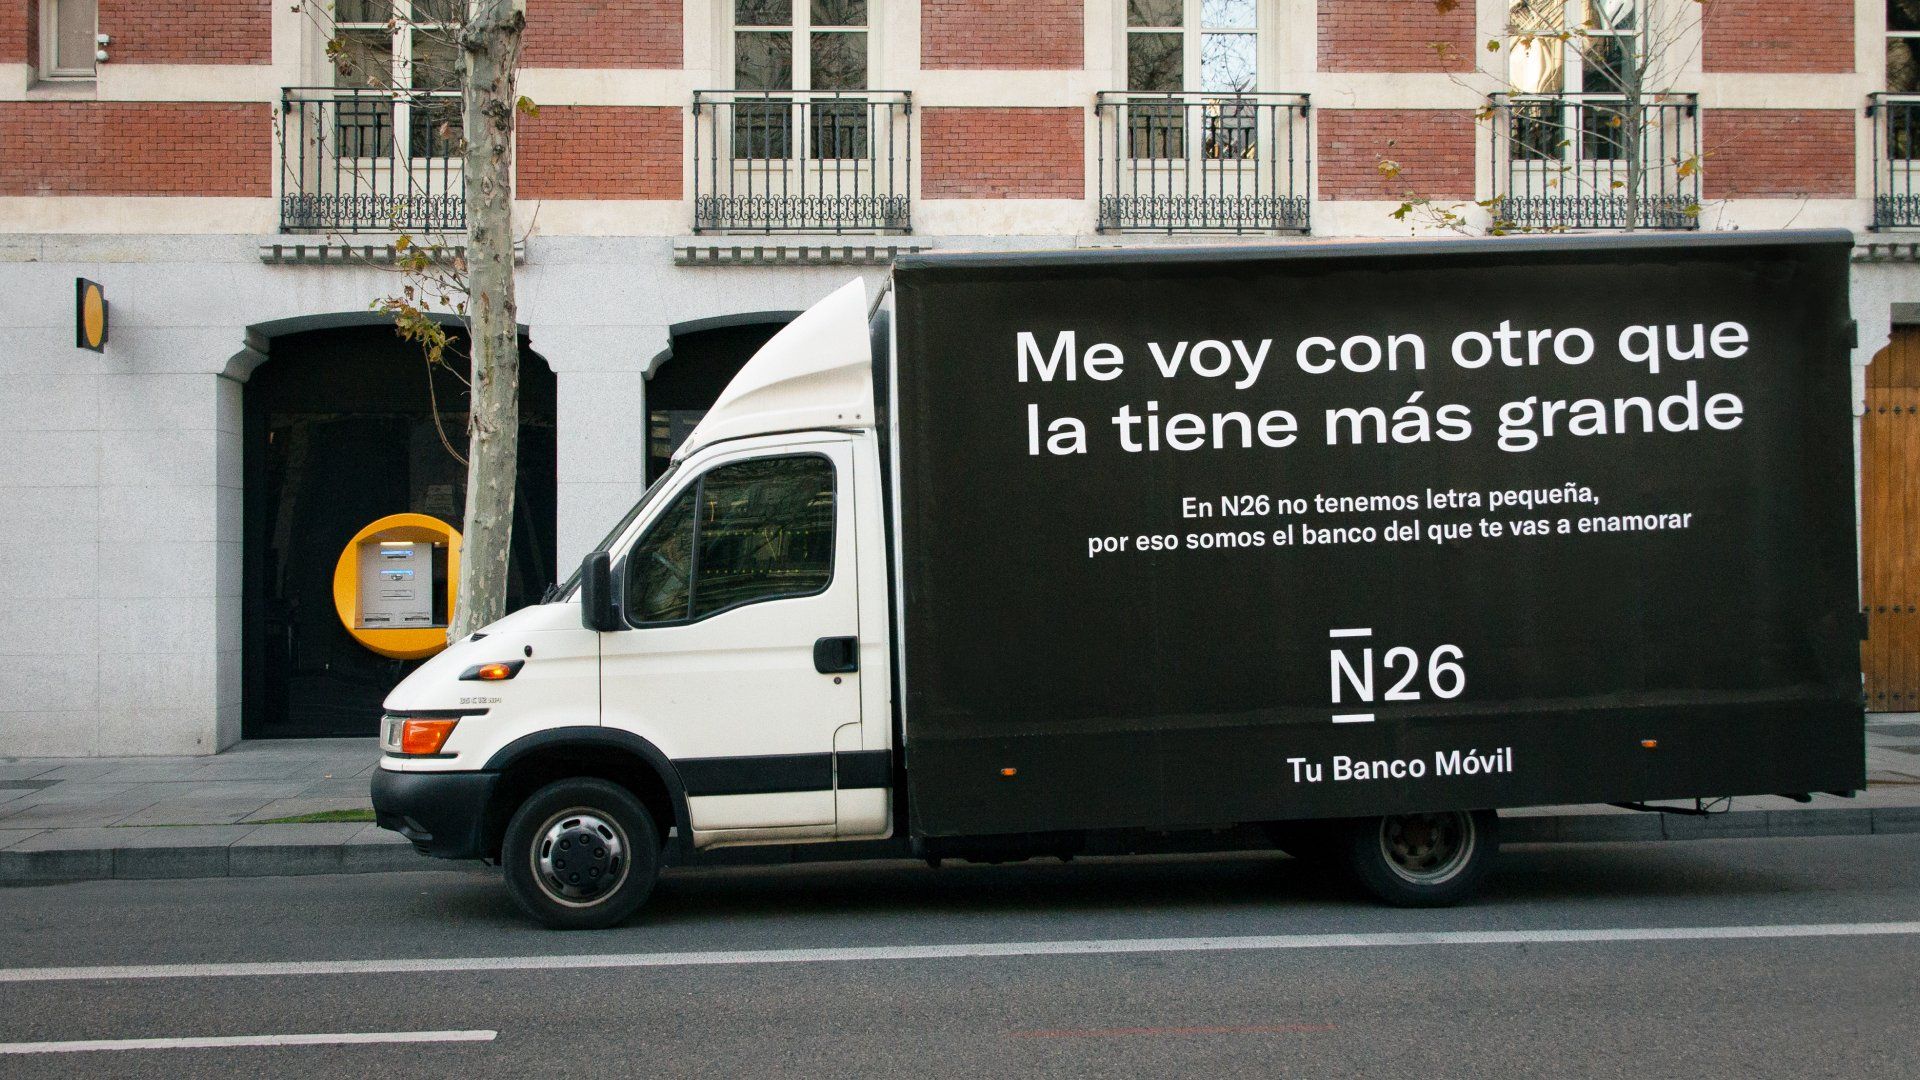 La original campaña de N26 por San Valentín para romper con la "relaciones bancarias tóxicas"